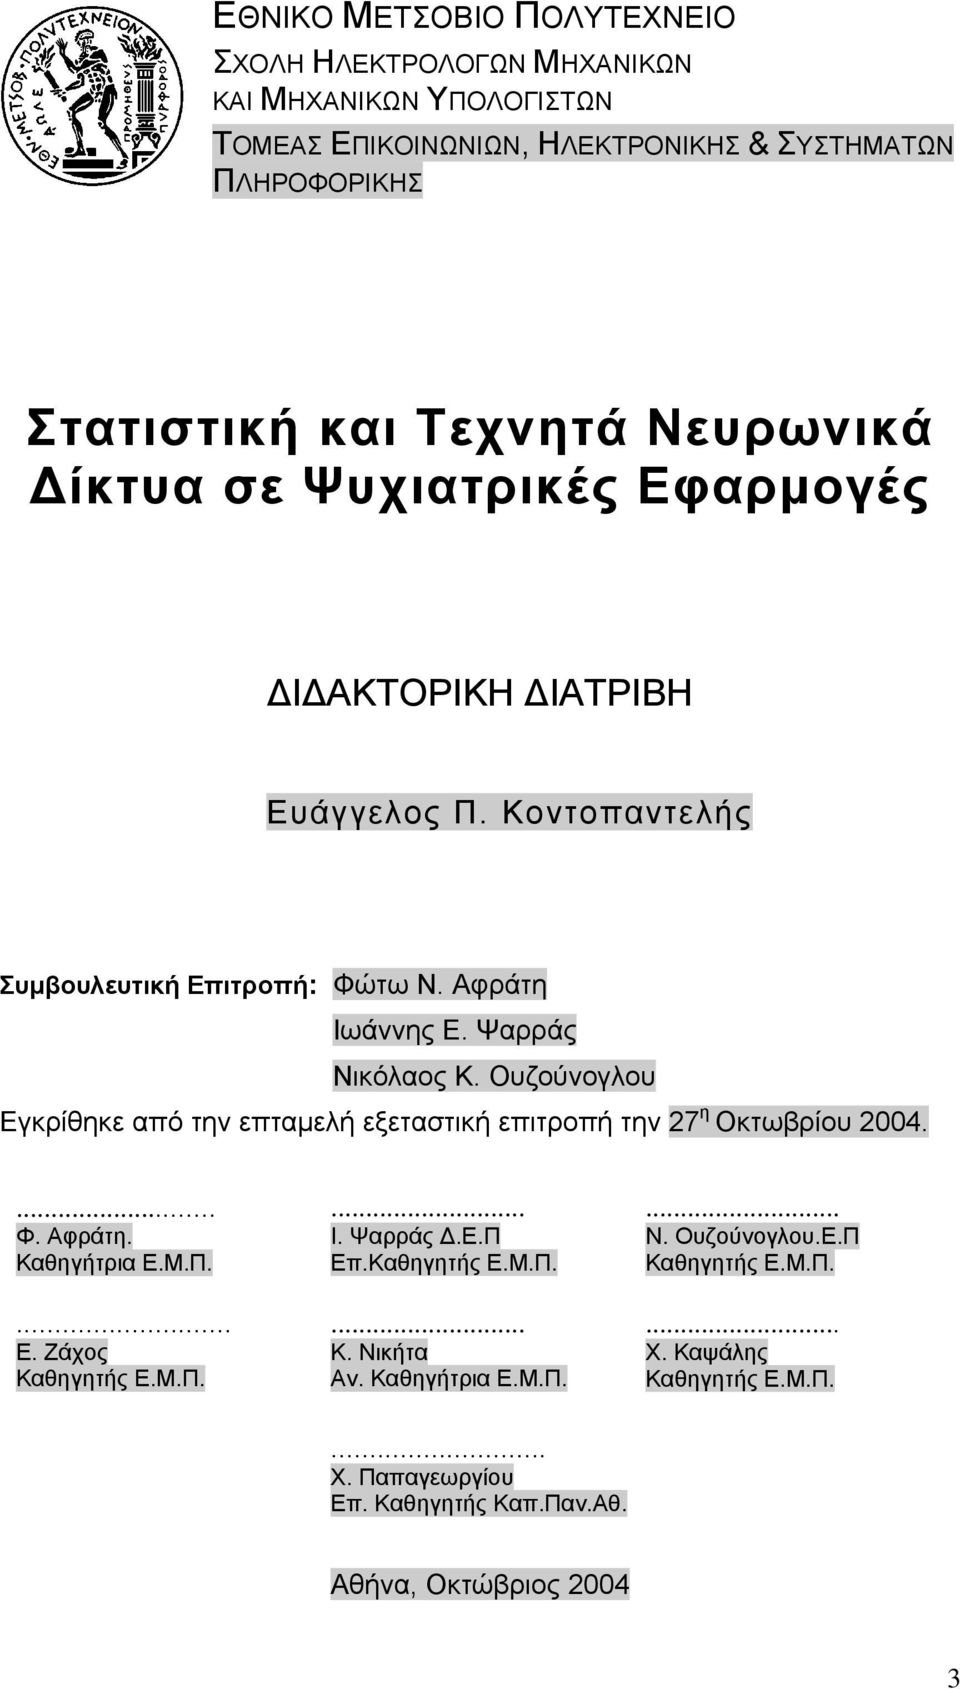 Ουζούνογλου Εγκρίθηκε από την επταμελή εξεταστική επιτροπή την 27 η Οκτωβρίου 2004.... Φ. Αφράτη. Καθηγήτρια Ε.Μ.Π.... Ε. Ζάχος Καθηγητής Ε.Μ.Π.... Ι. Ψαρράς Δ.Ε.Π Επ.